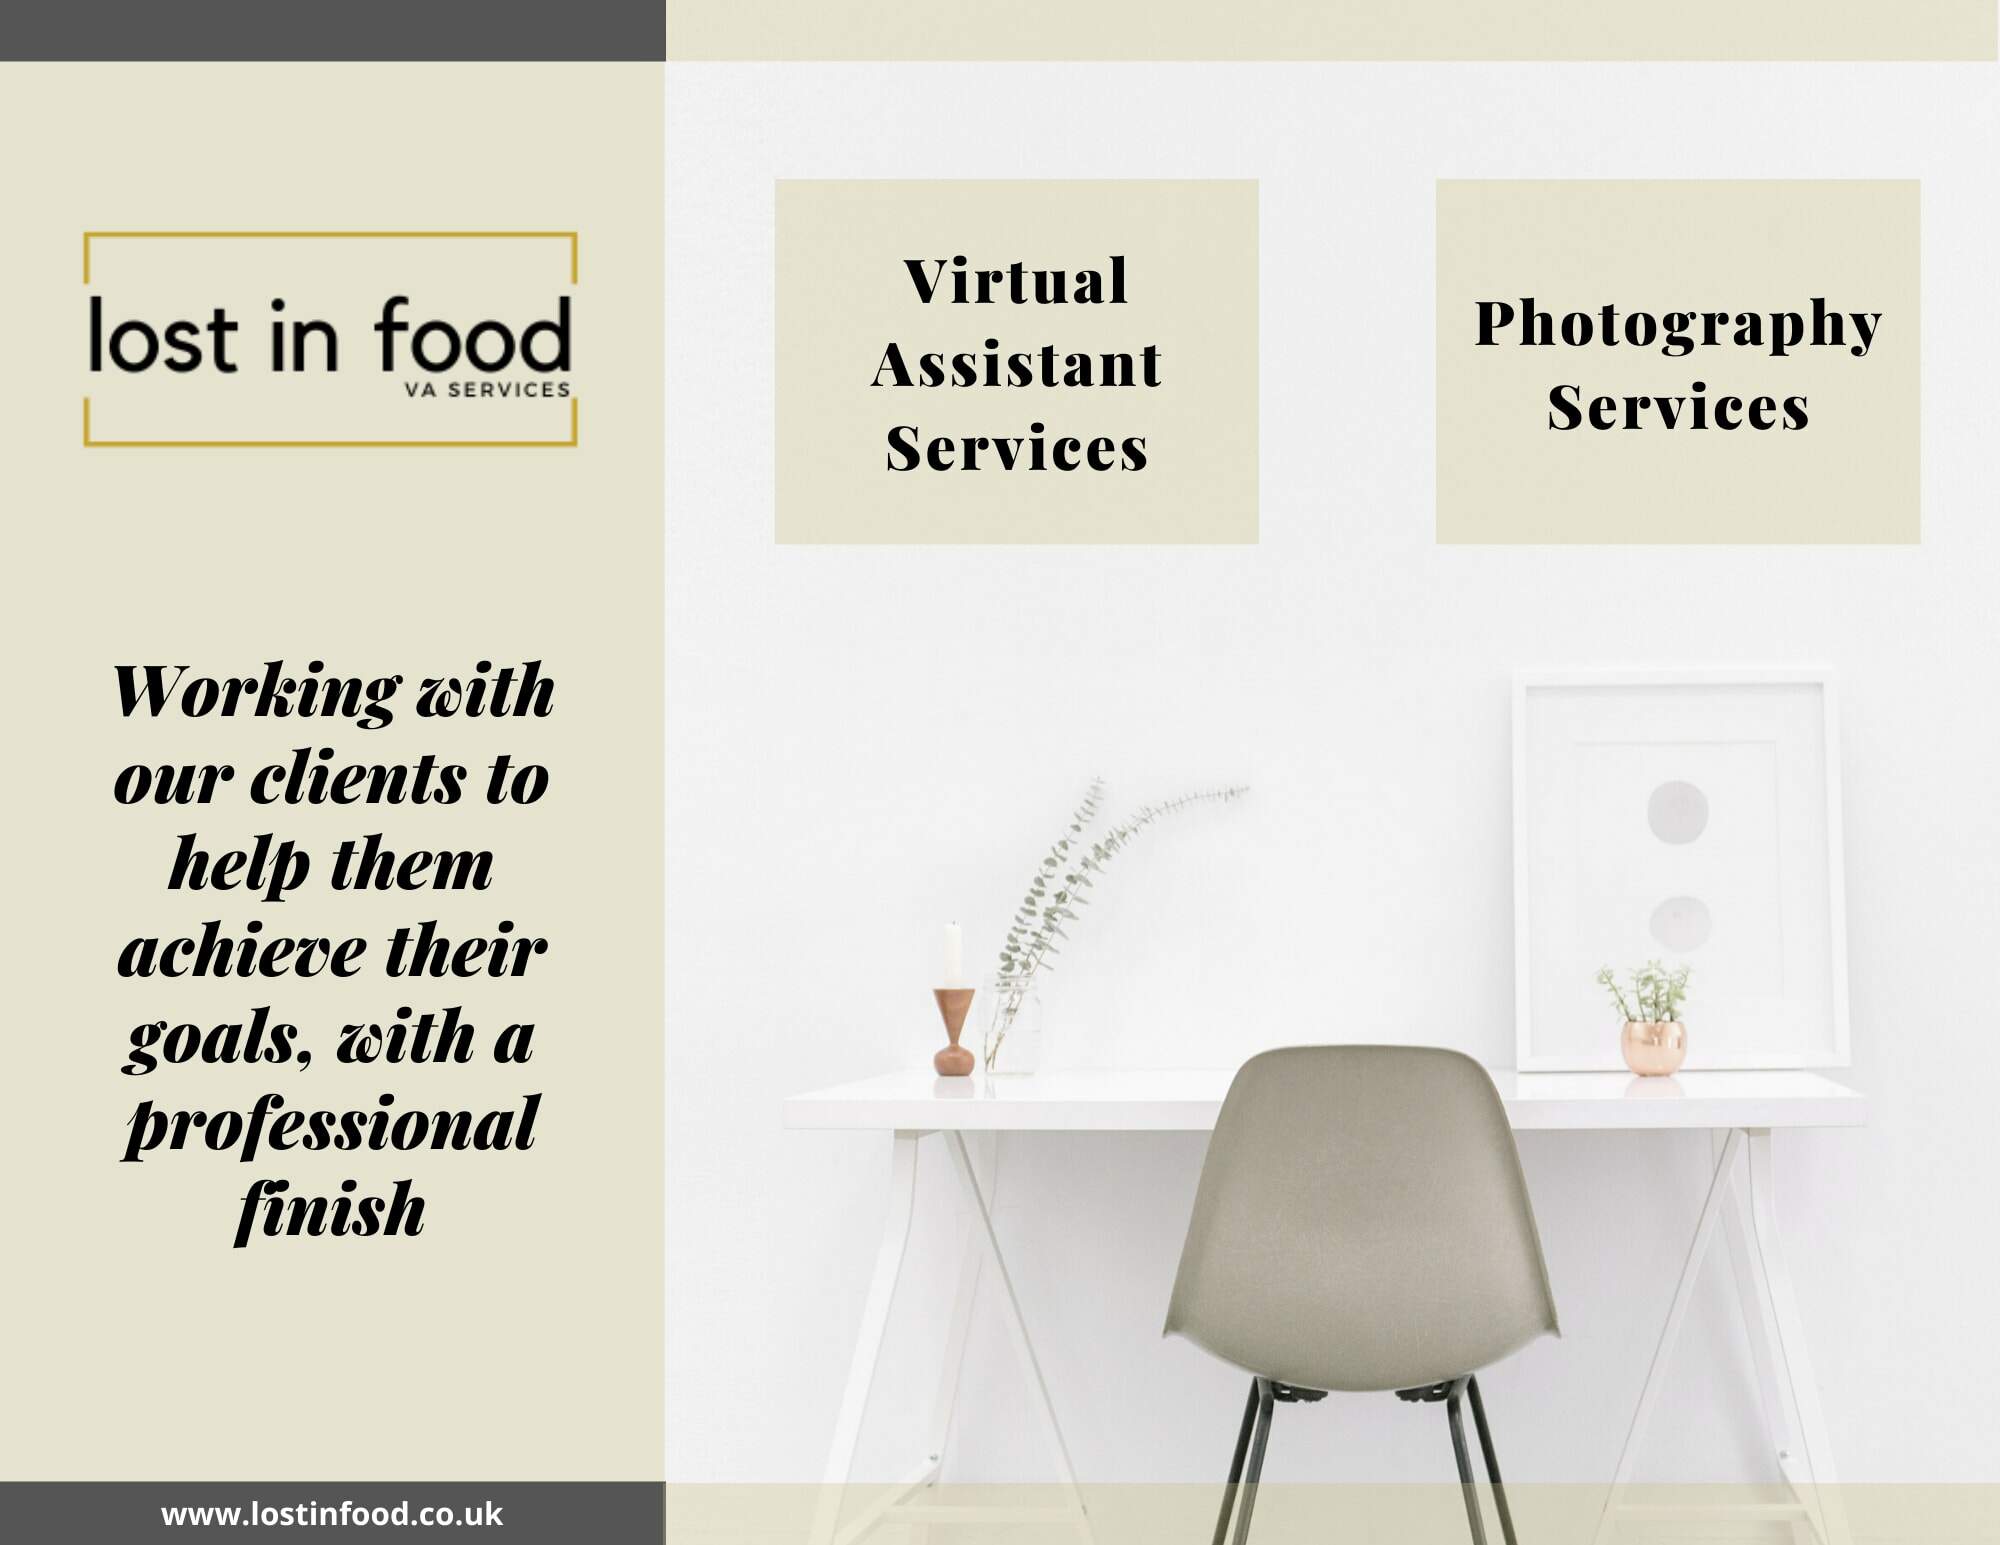 Brochure describing VA Services for Lost in Food